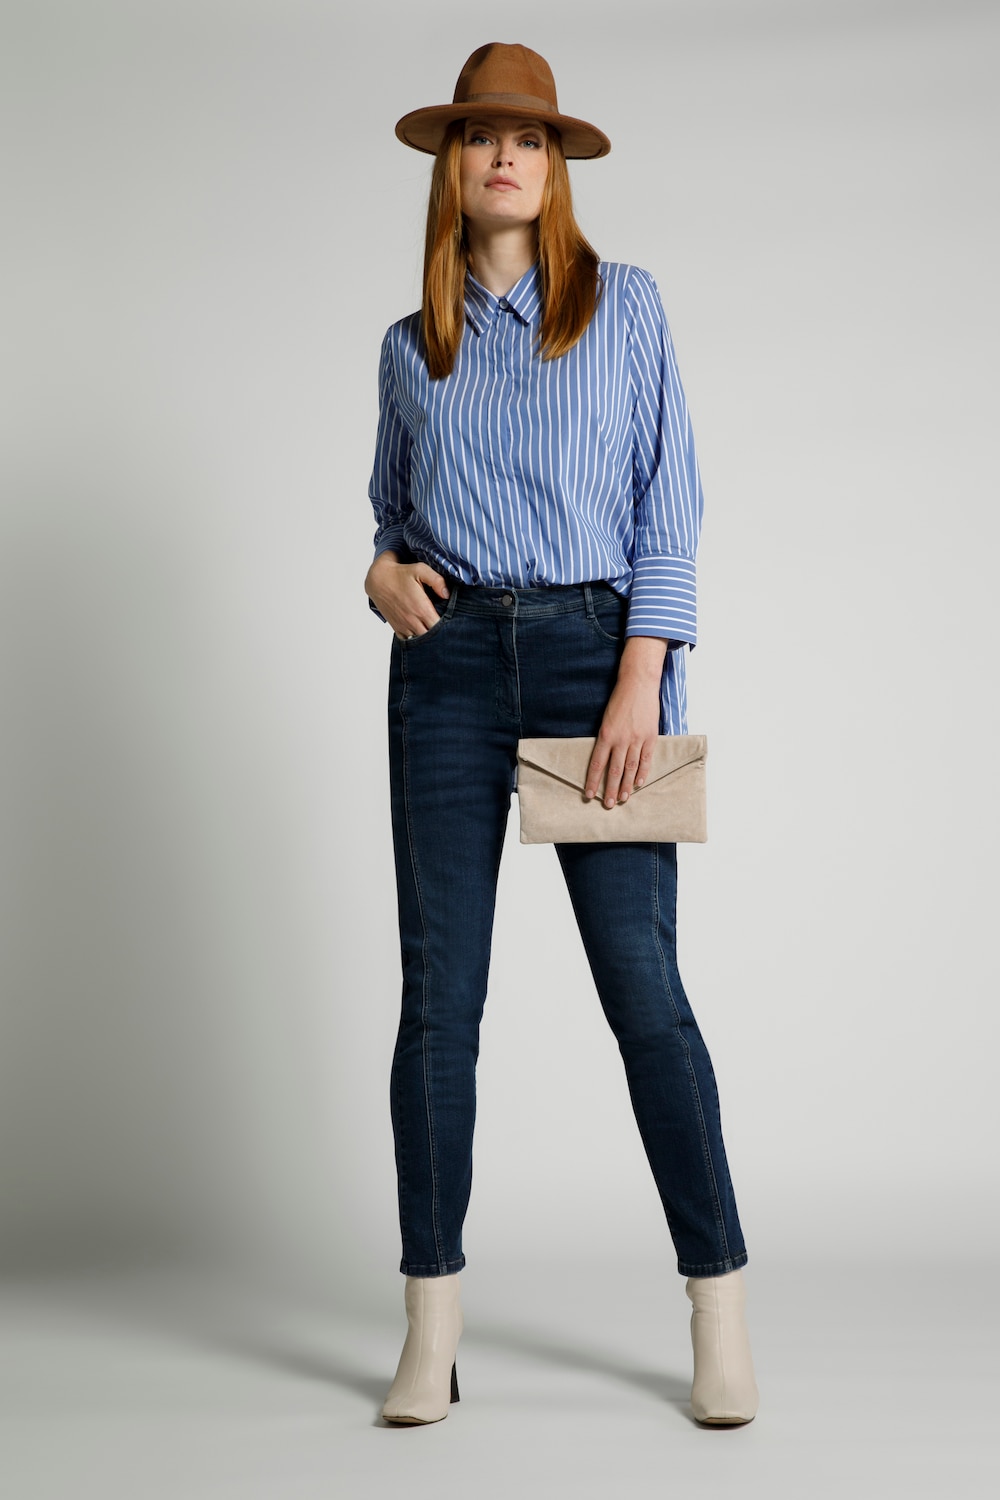 Grote Maten jeans Sienna, Dames, blauw, Maat: 44, Katoen/Synthetische vezels, Ulla Popken